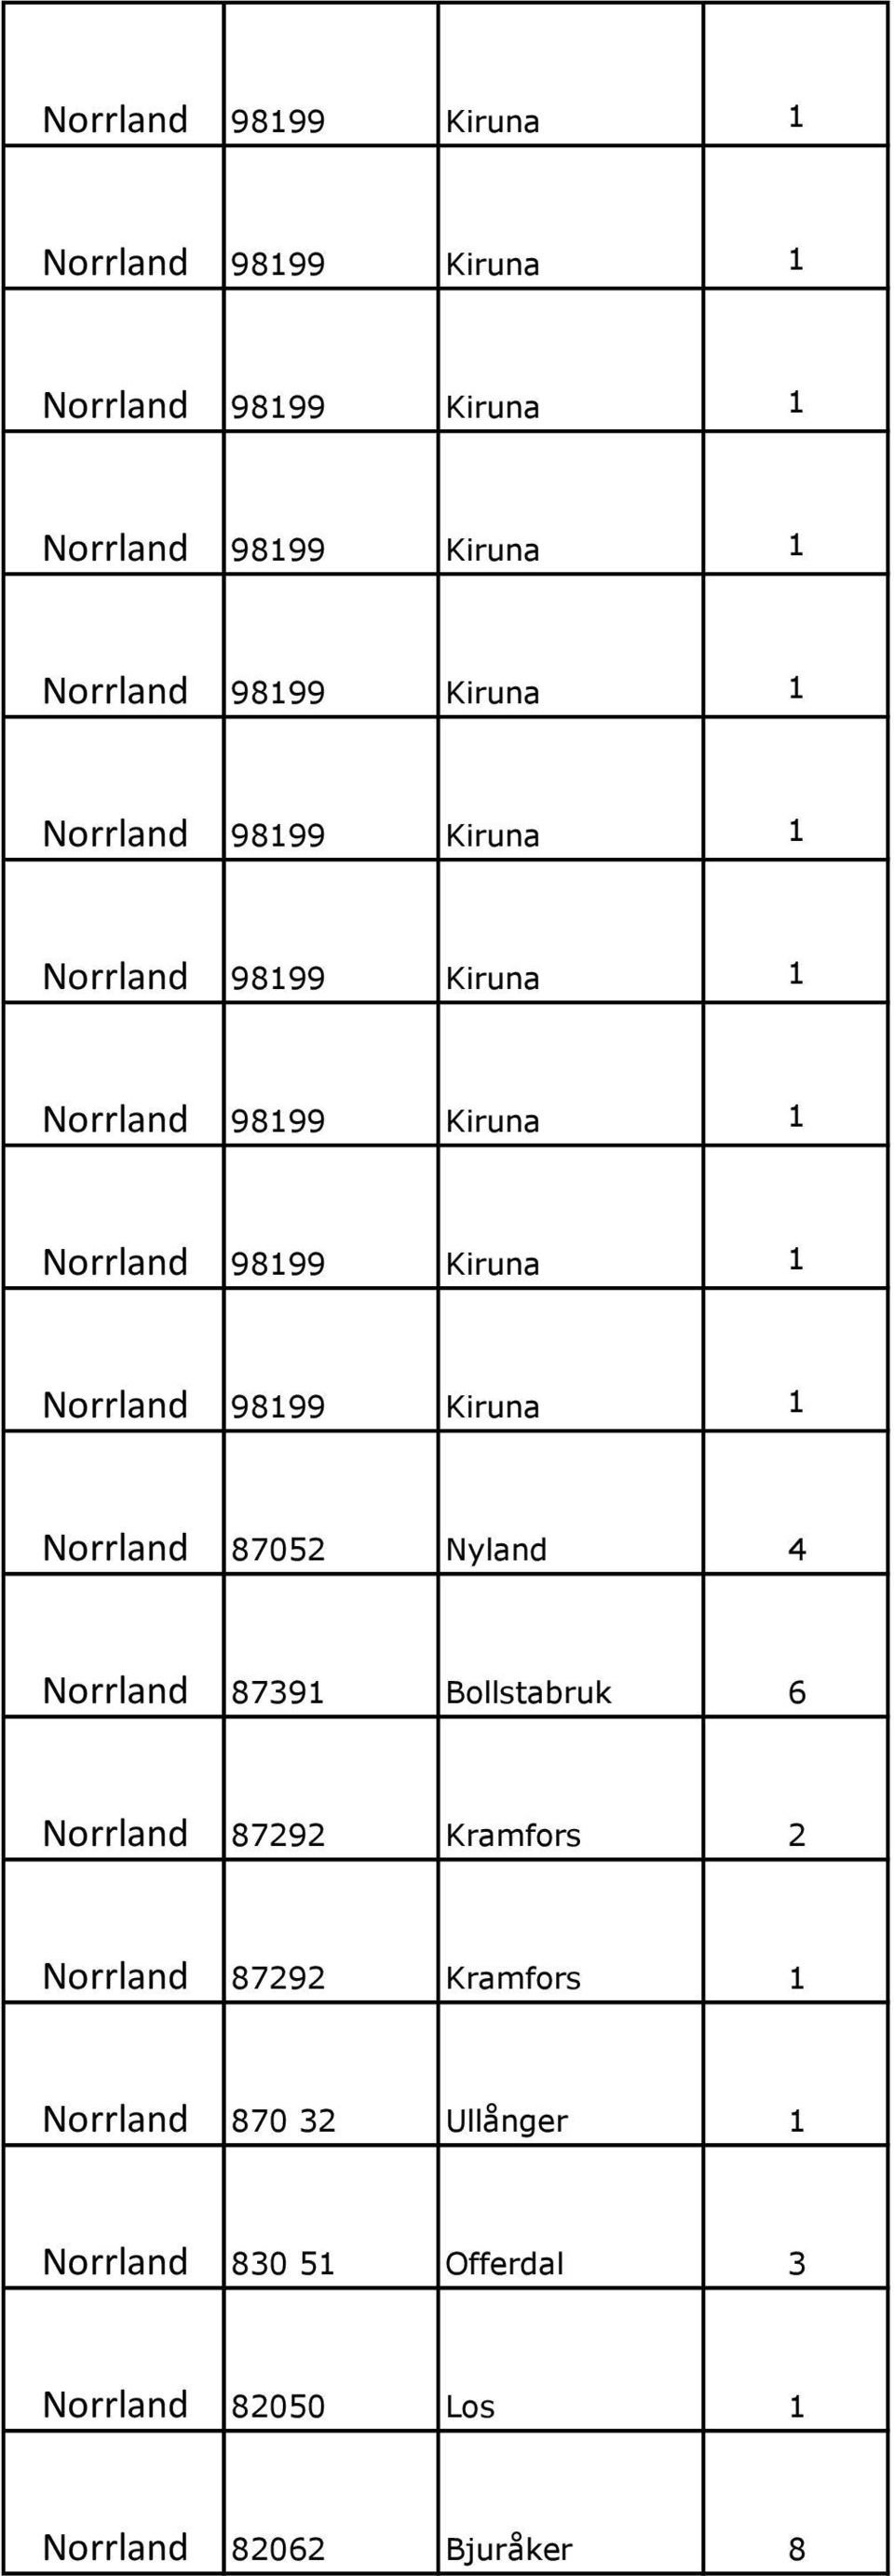 1 Norrland 870 32 Ullånger 1 Norrland 830 51